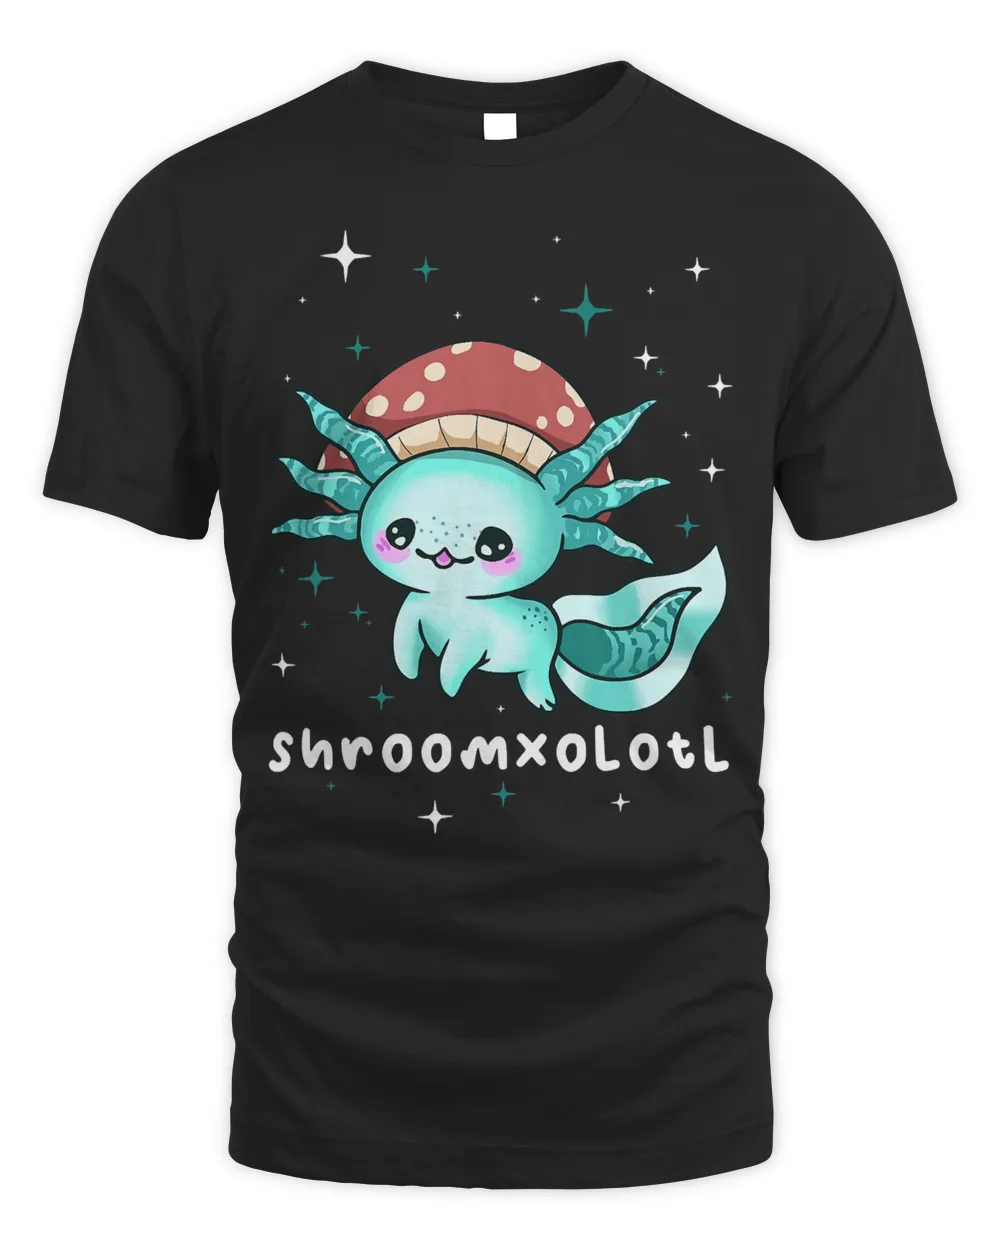 Cottagecore Aesthetic Axolotl Mushroom Hat Shroomxolotl 129